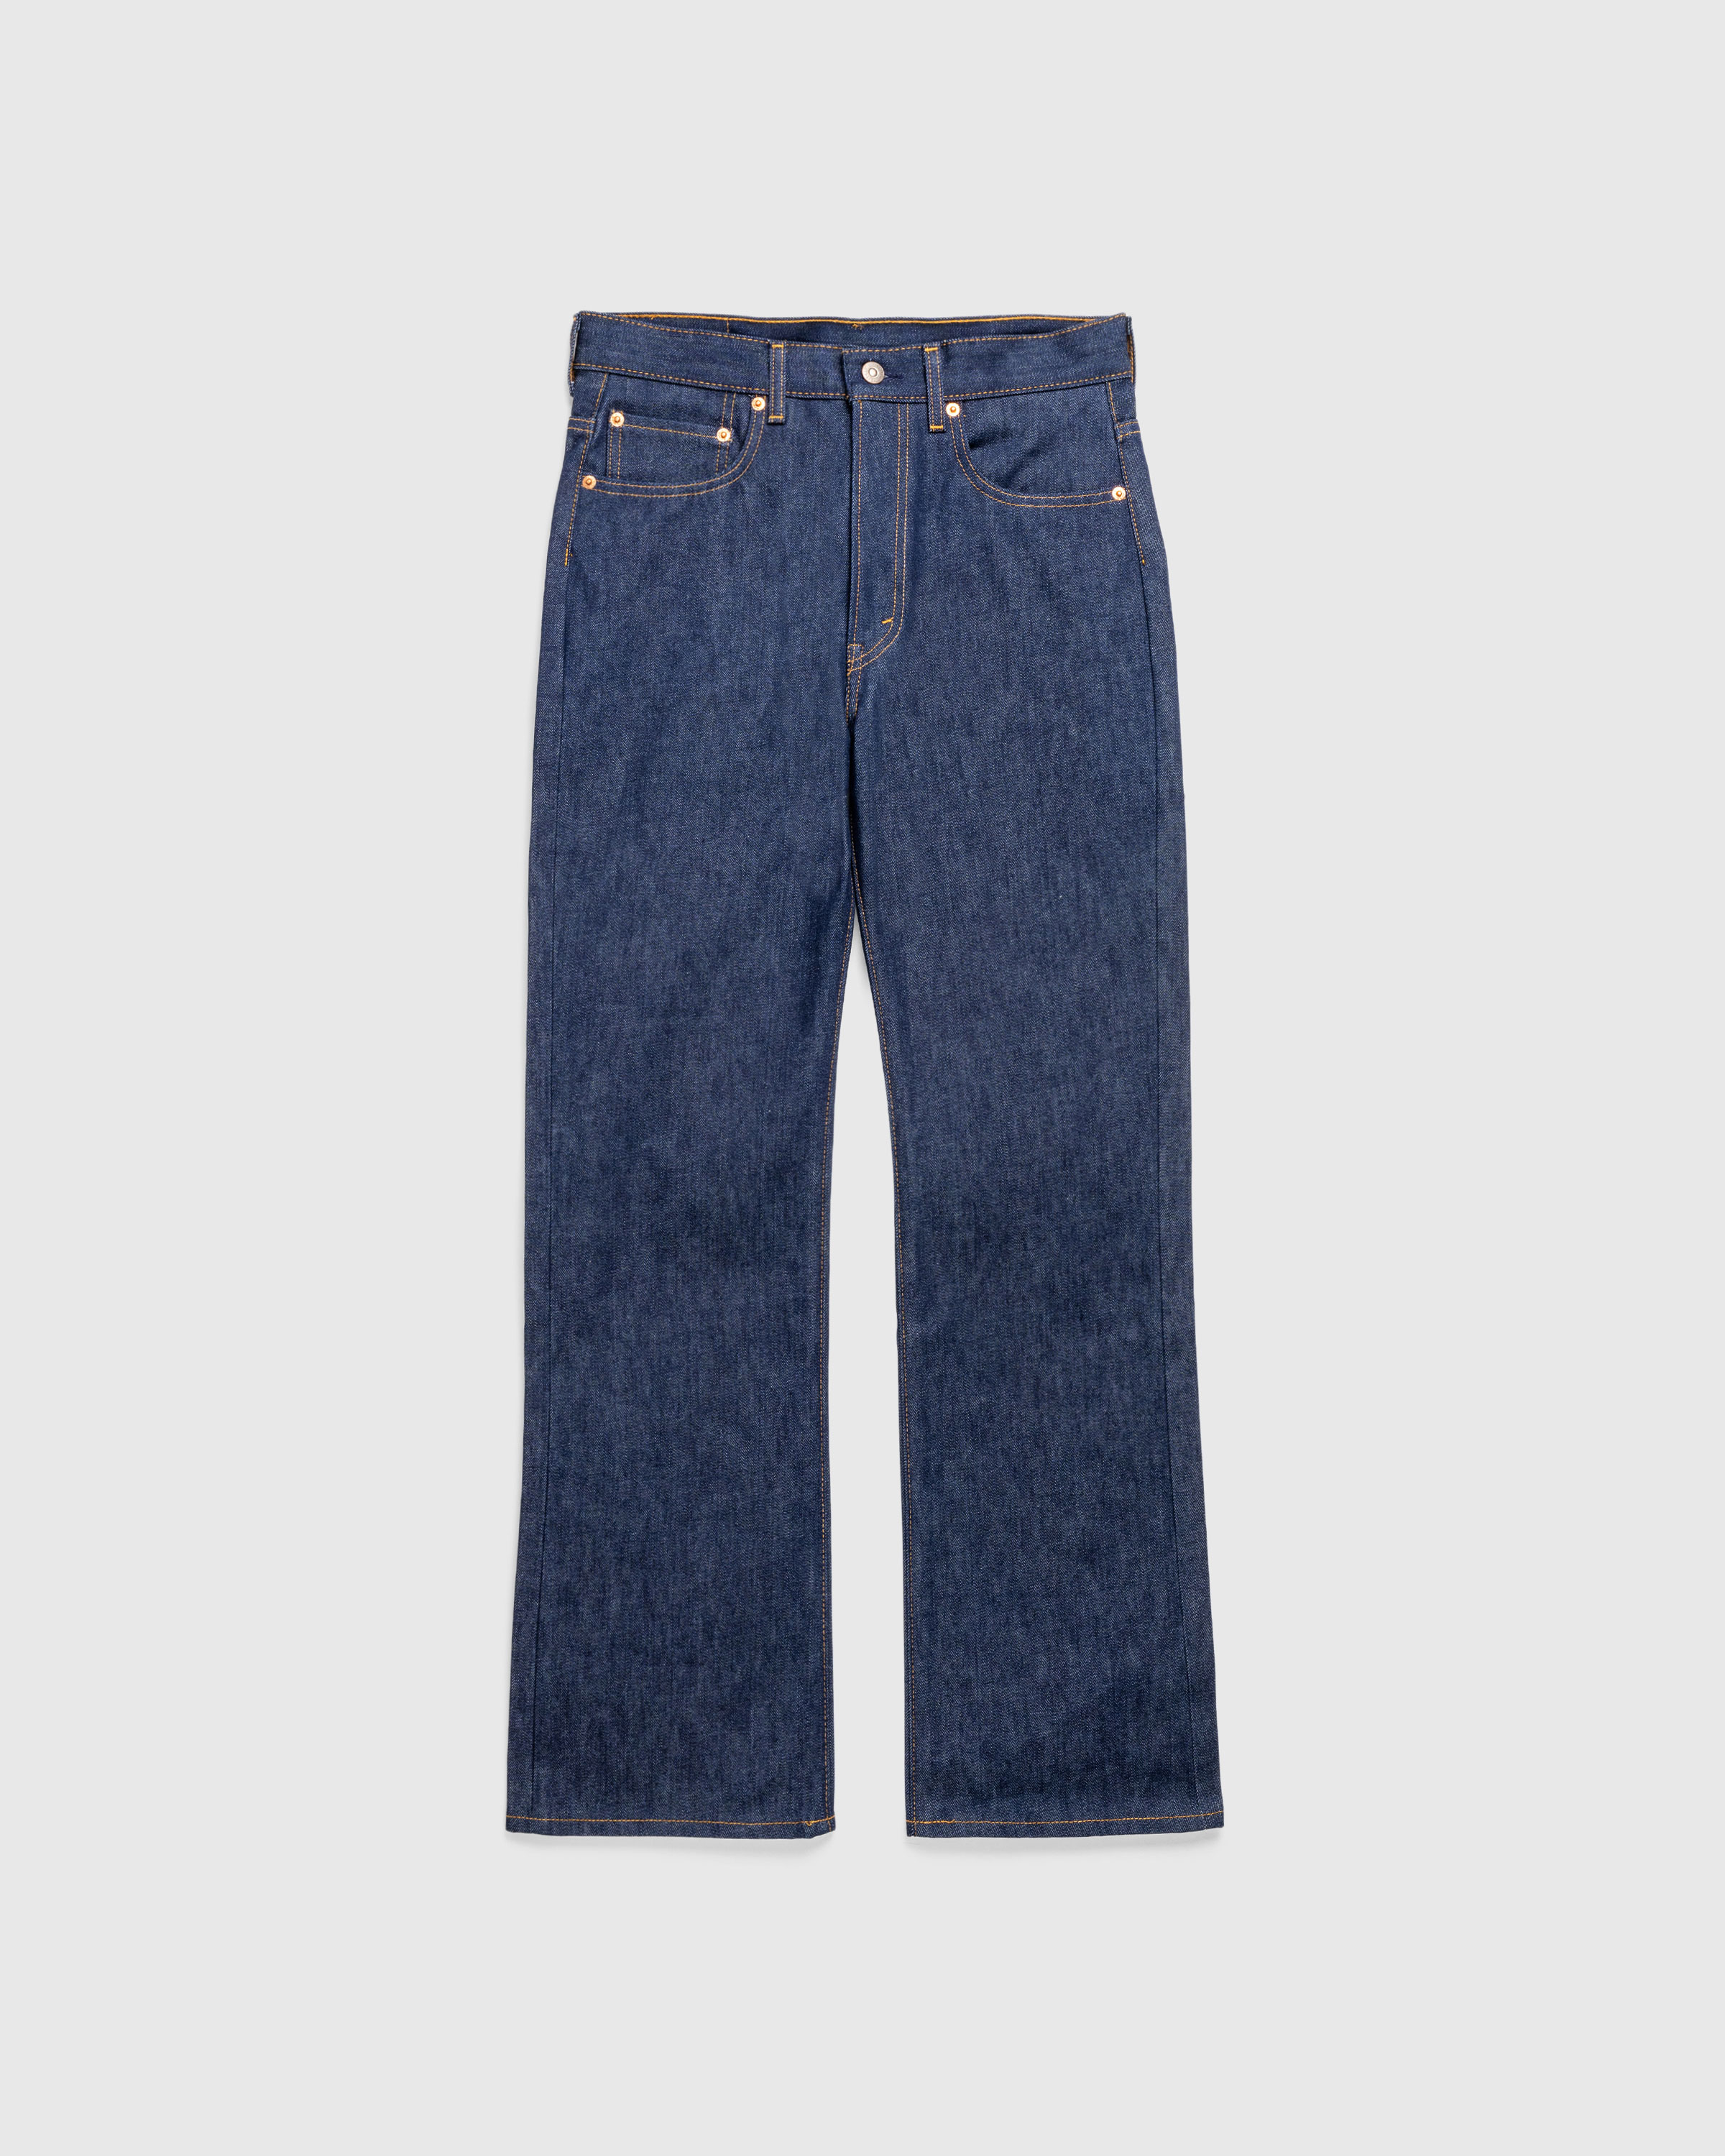 Levi's – 1970s 517 Bootcut Jeans Rigid Dark Indigo - Denim - Blue - Image 1